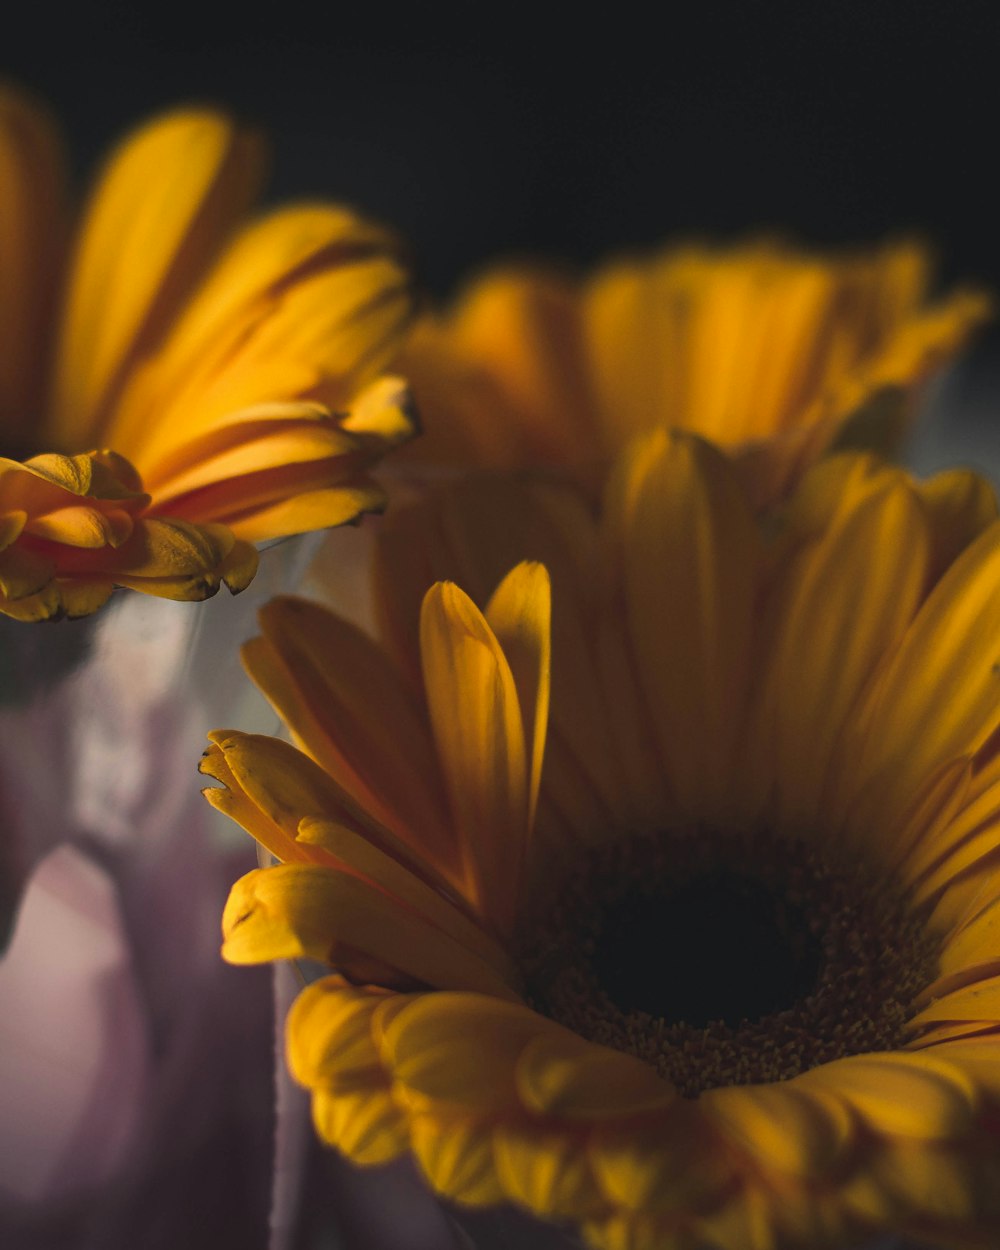 closeup photo of yellow sunflowers